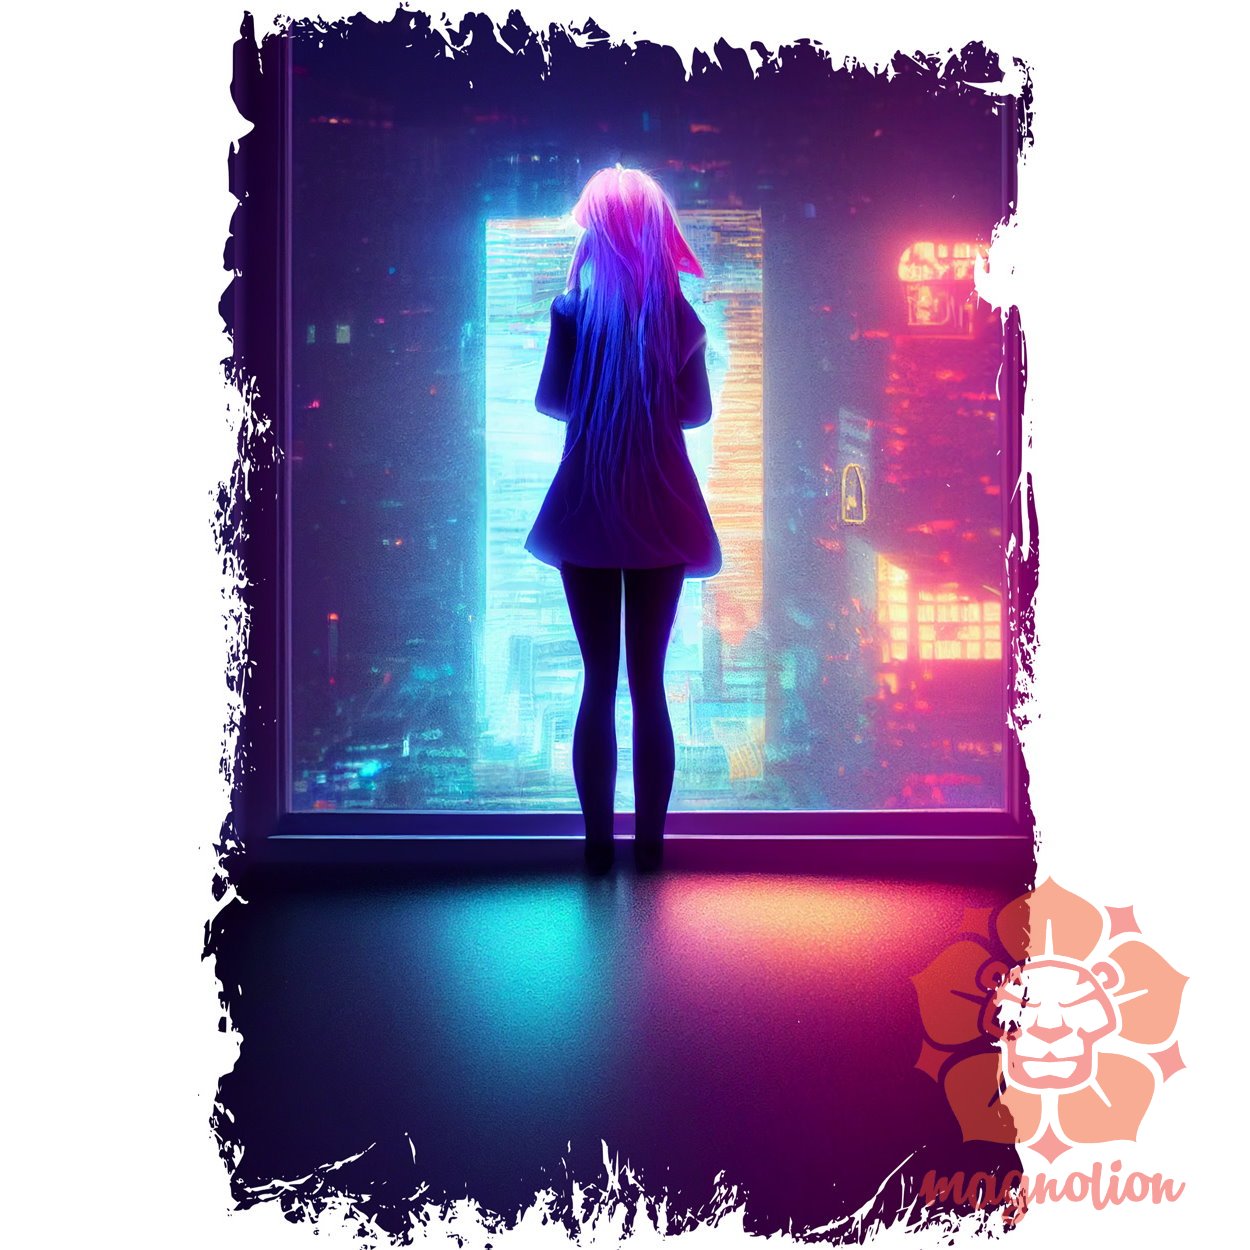 Lány egyedül a neon szobában v3